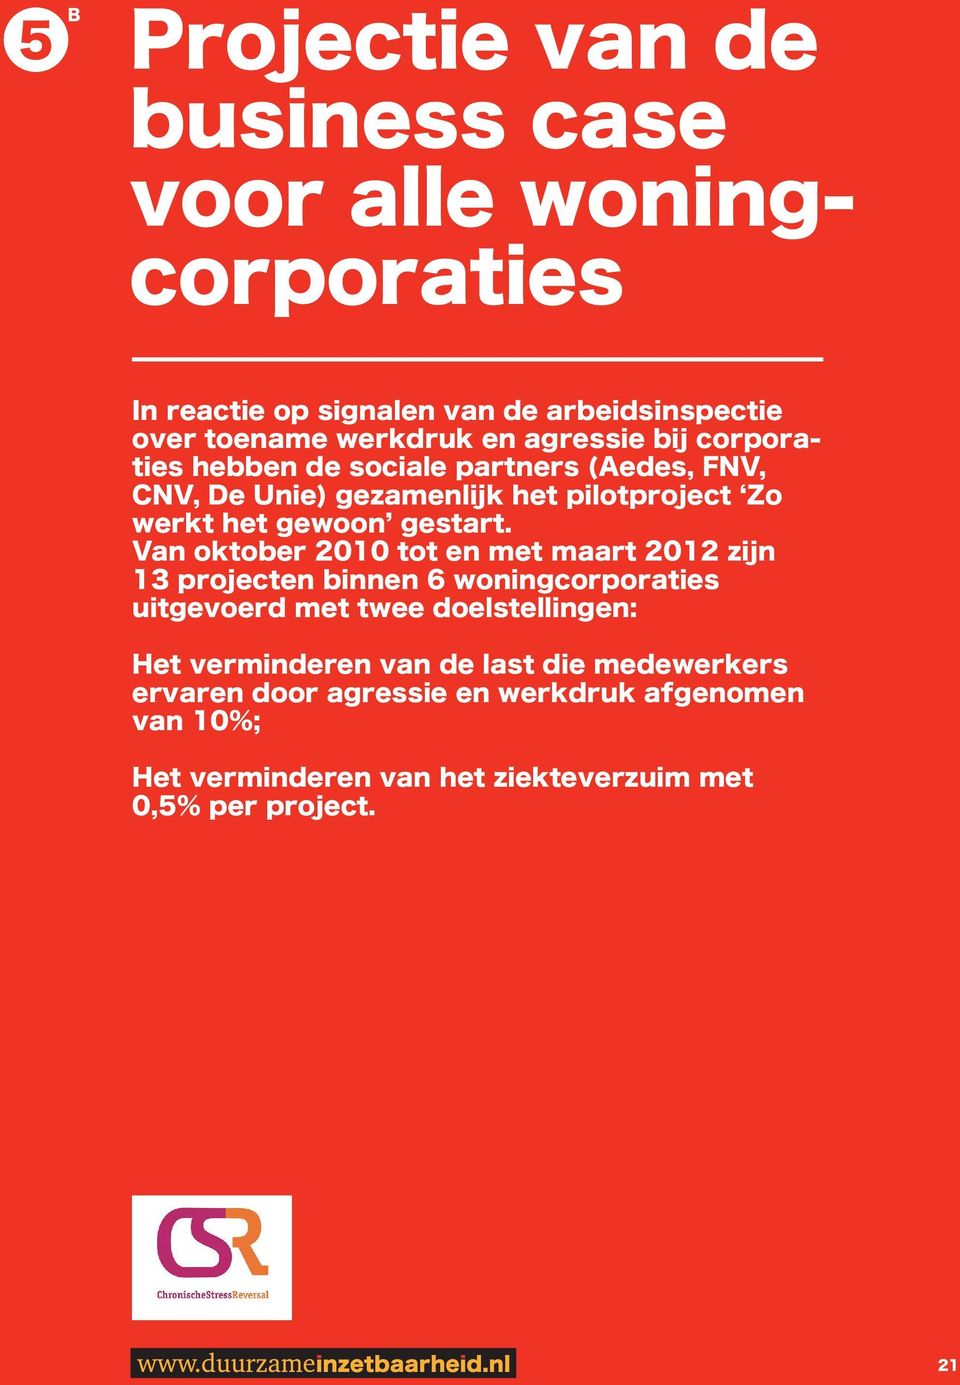 Van oktober 2010 tot en met maart 2012 zijn 13 projecten binnen 6 woningcorporaties uitgevoerd met twee doelstellingen: Het verminderen